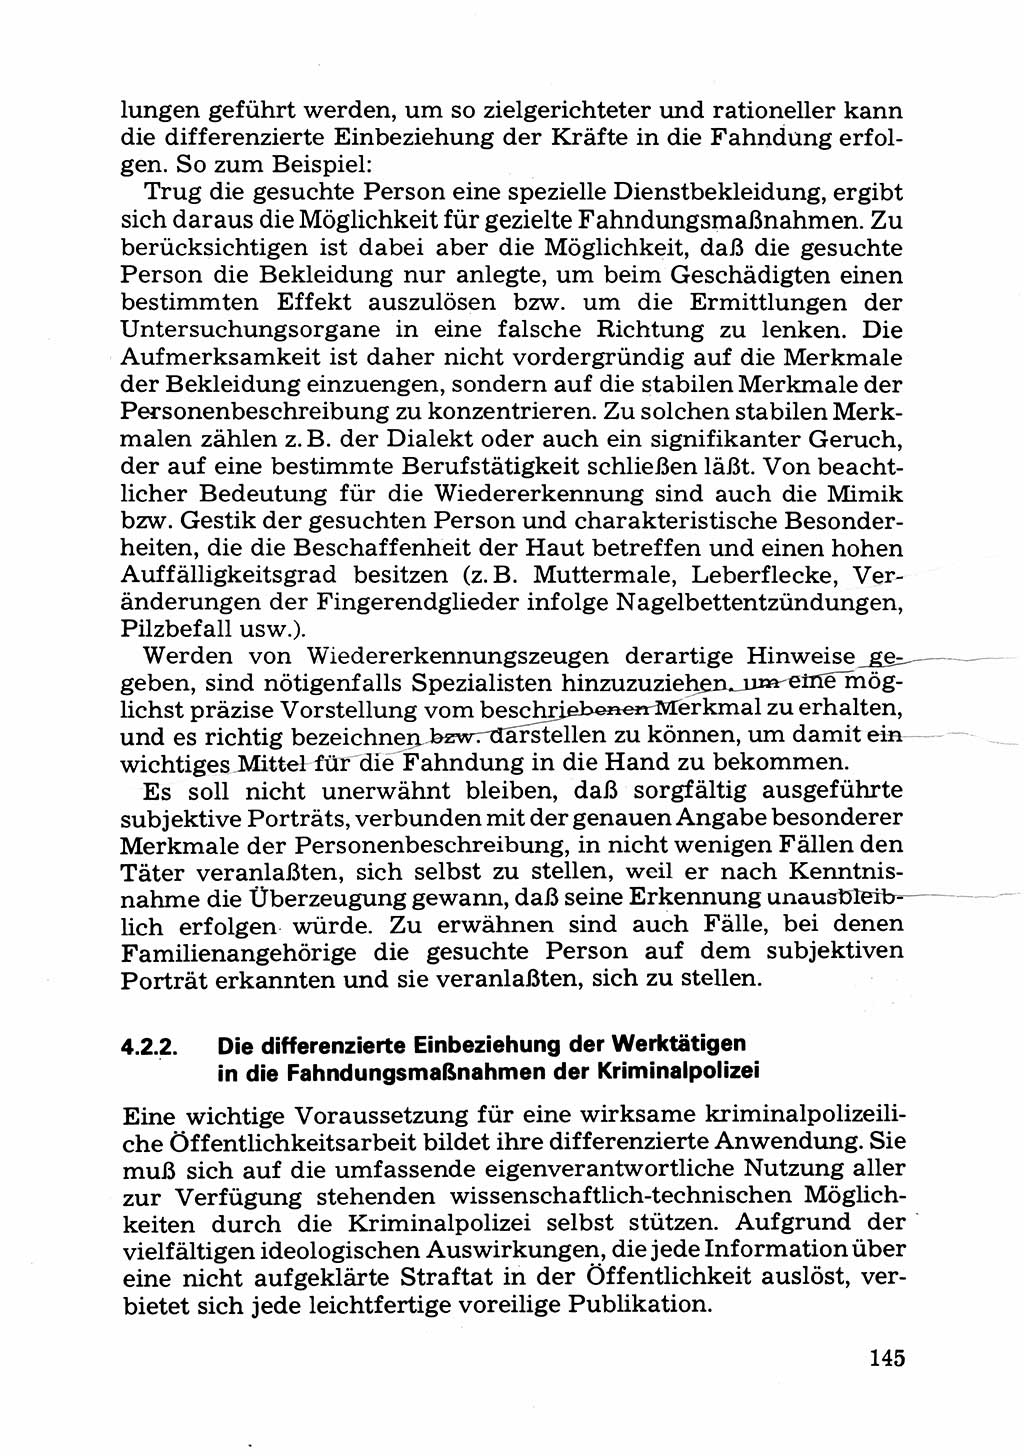 Das subjektive Porträt [Deutsche Demokratische Republik (DDR)] 1981, Seite 145 (Subj. Port. DDR 1981, S. 145)